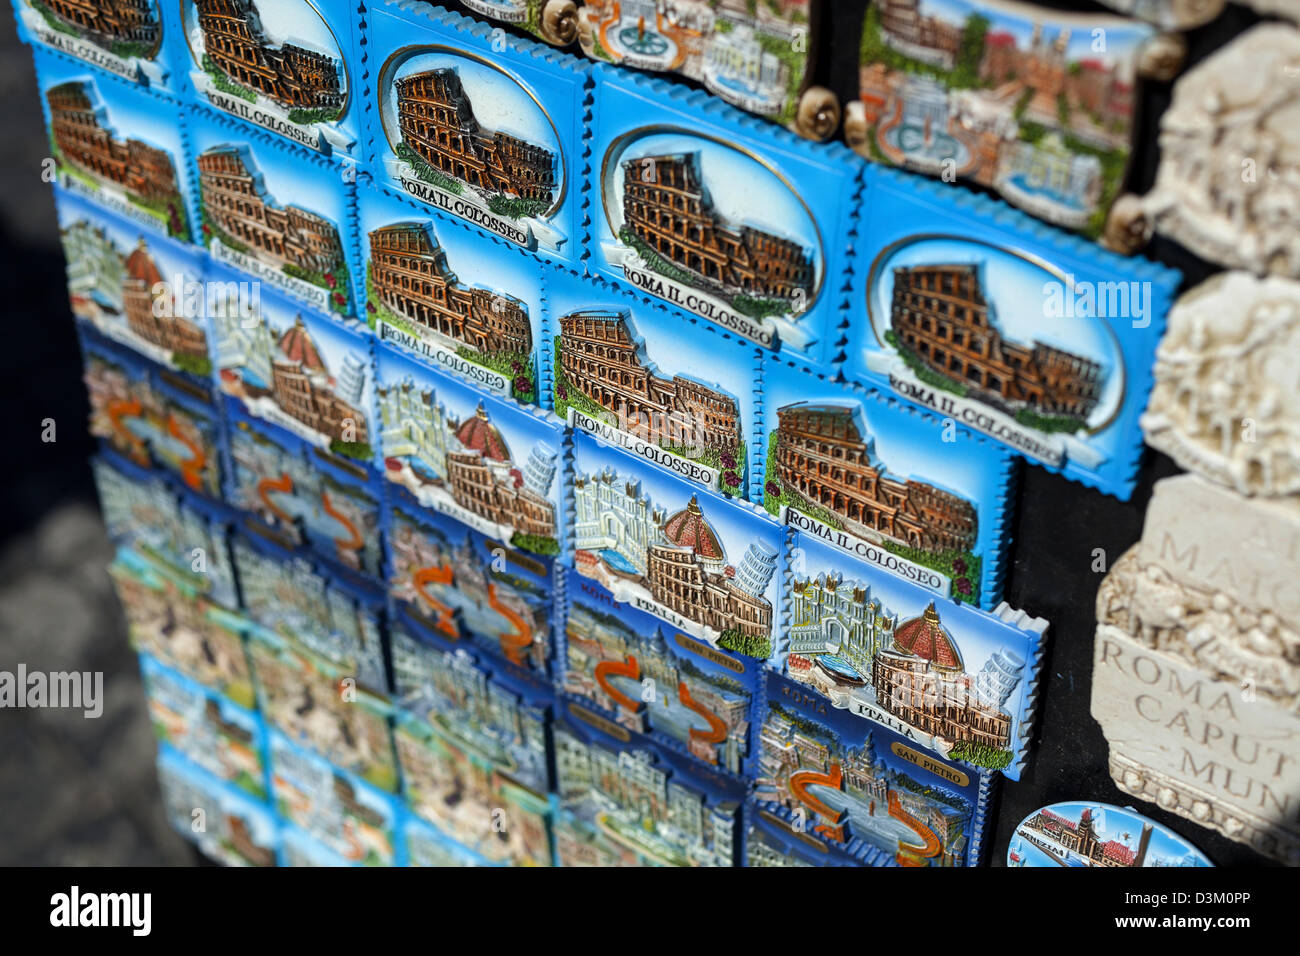 Appiccicoso frigo souvenir magnete sulla bancarella vendendo ai turisti vicino al forum di Roma Foto Stock